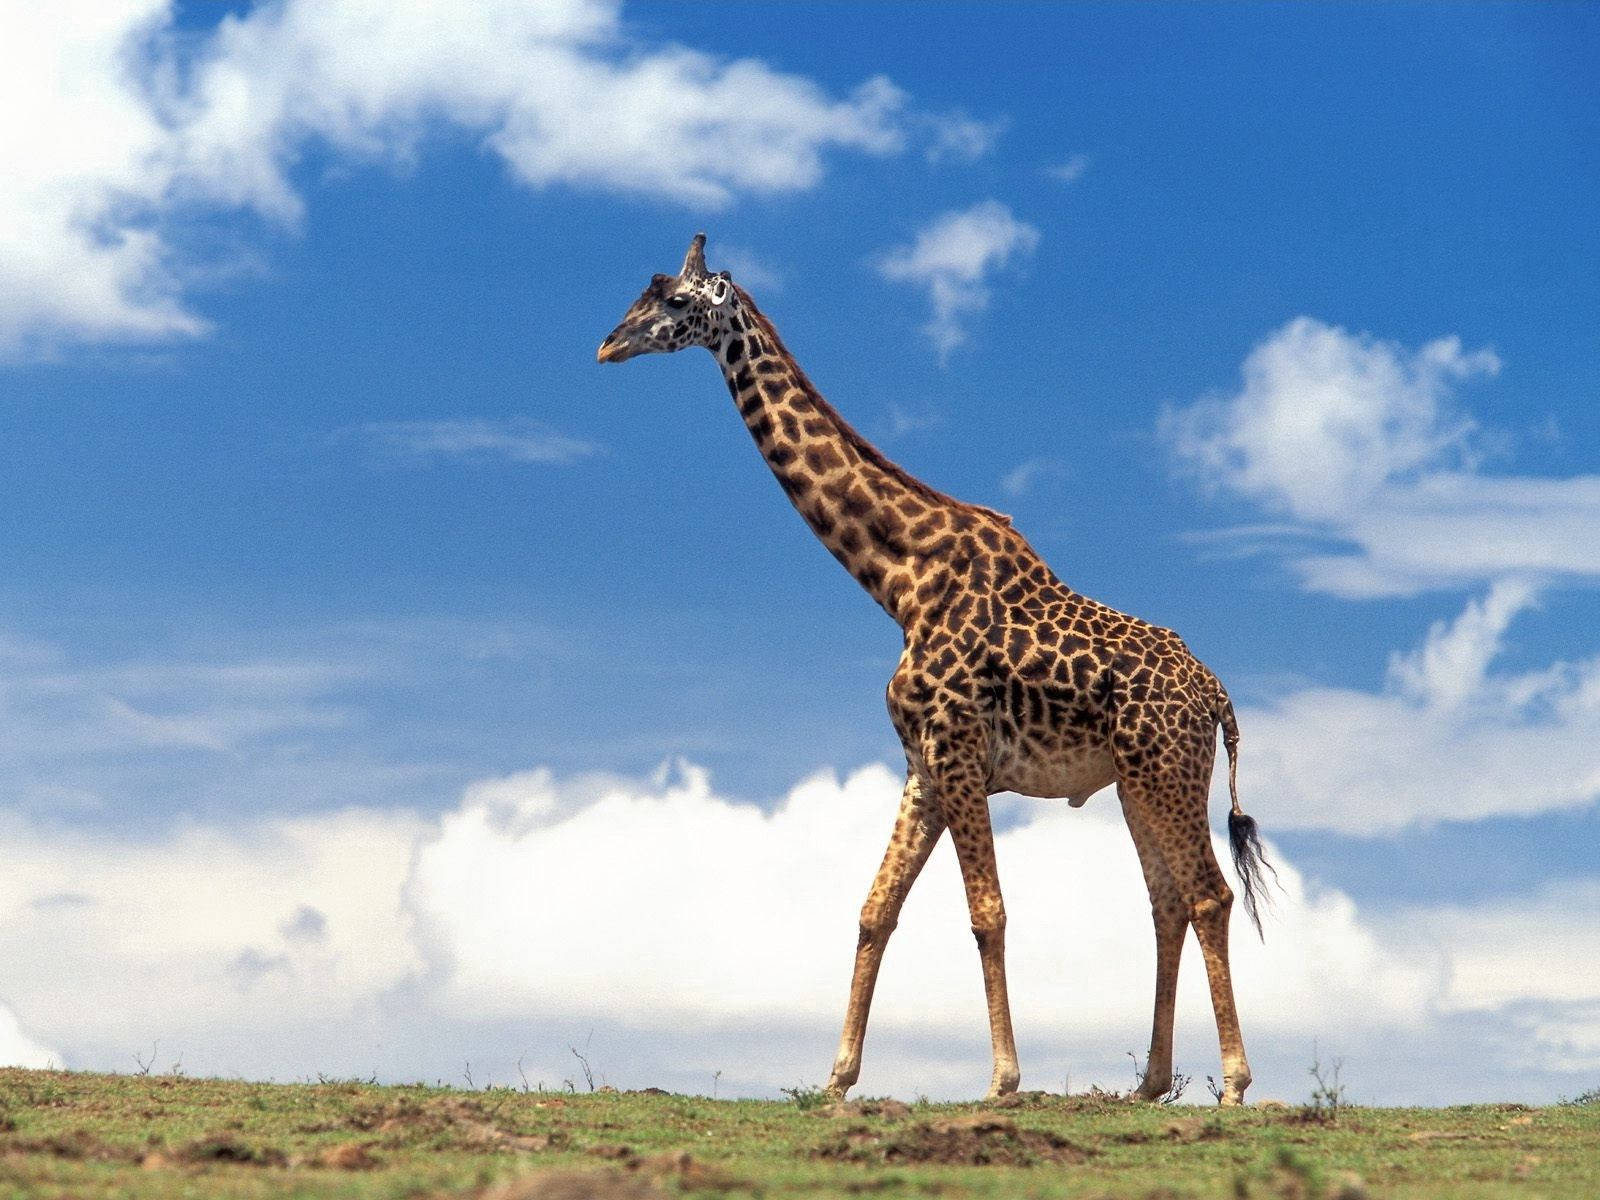 Giraffe Walking On The Grass